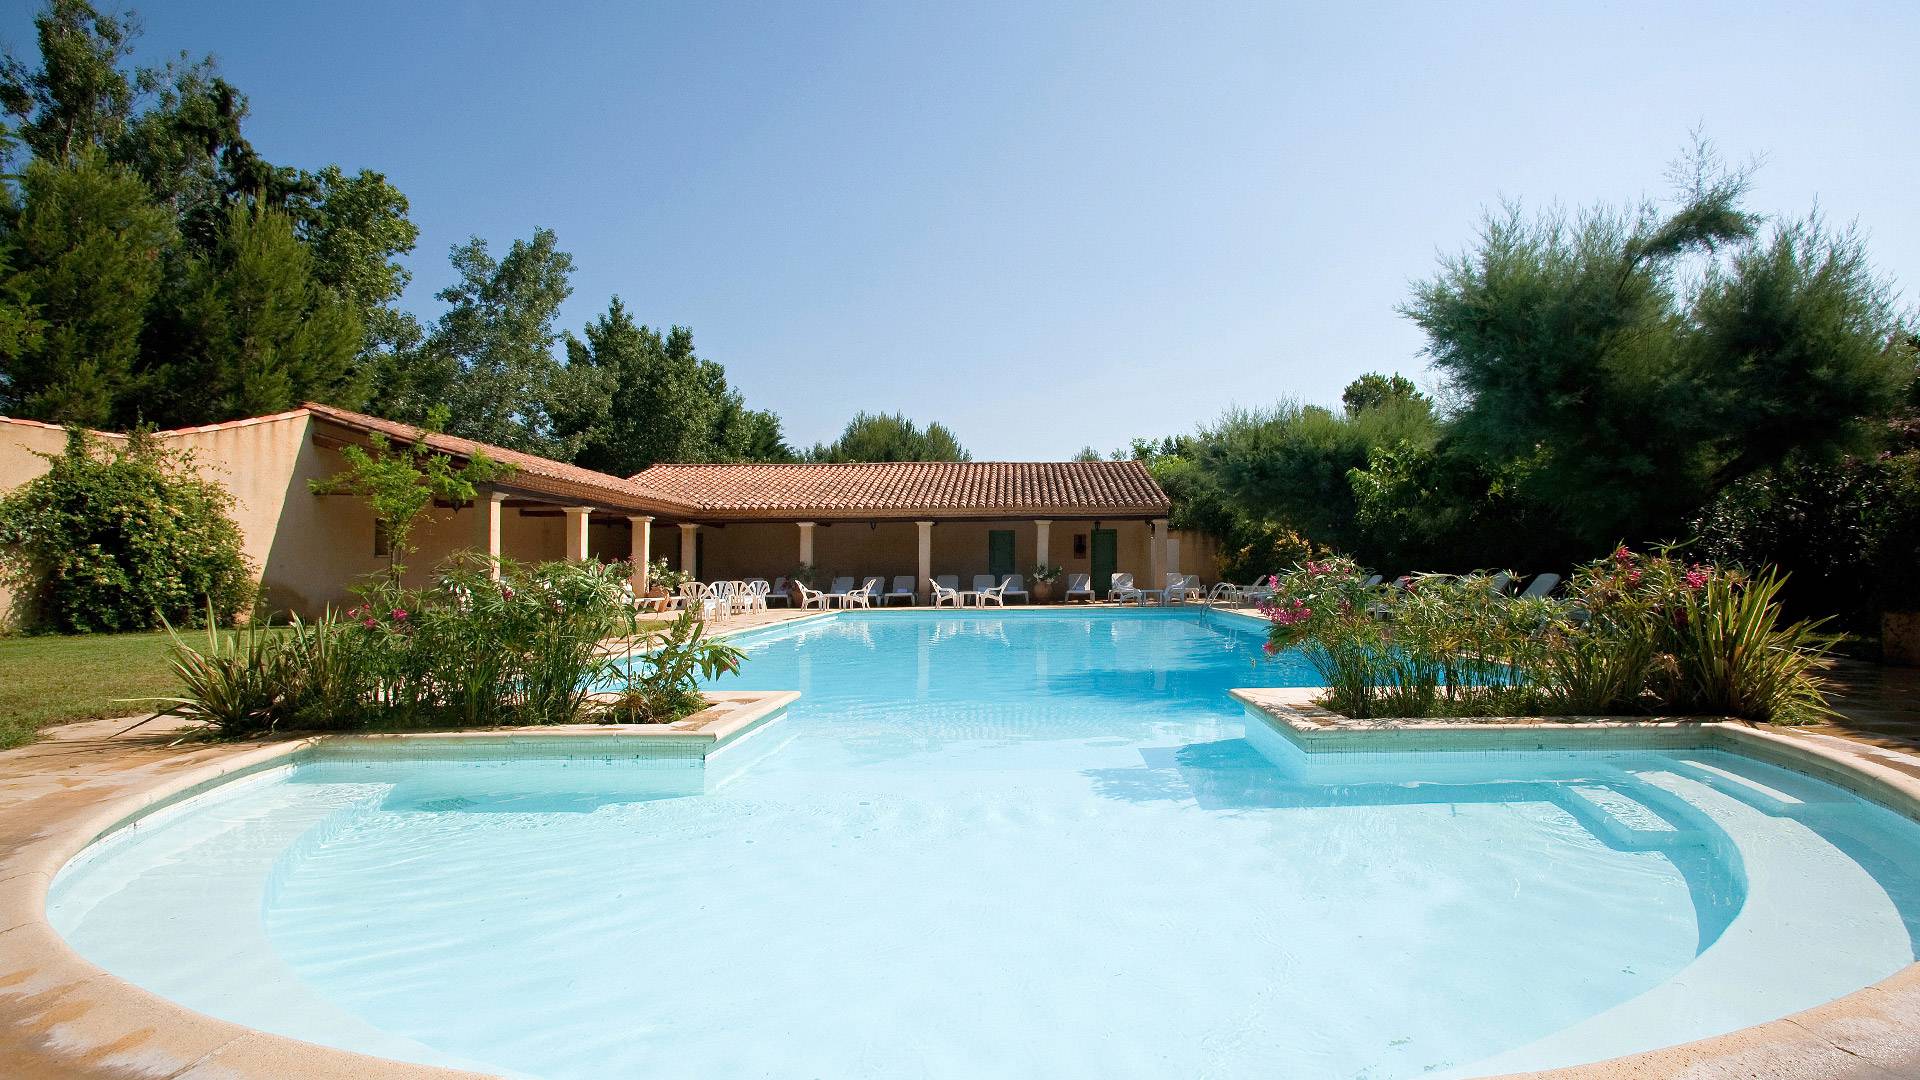 Découvrez pour vos séminaires dans le sud de la France, la piscine extérieur de l'HOTEL LE MAS DES SABLES